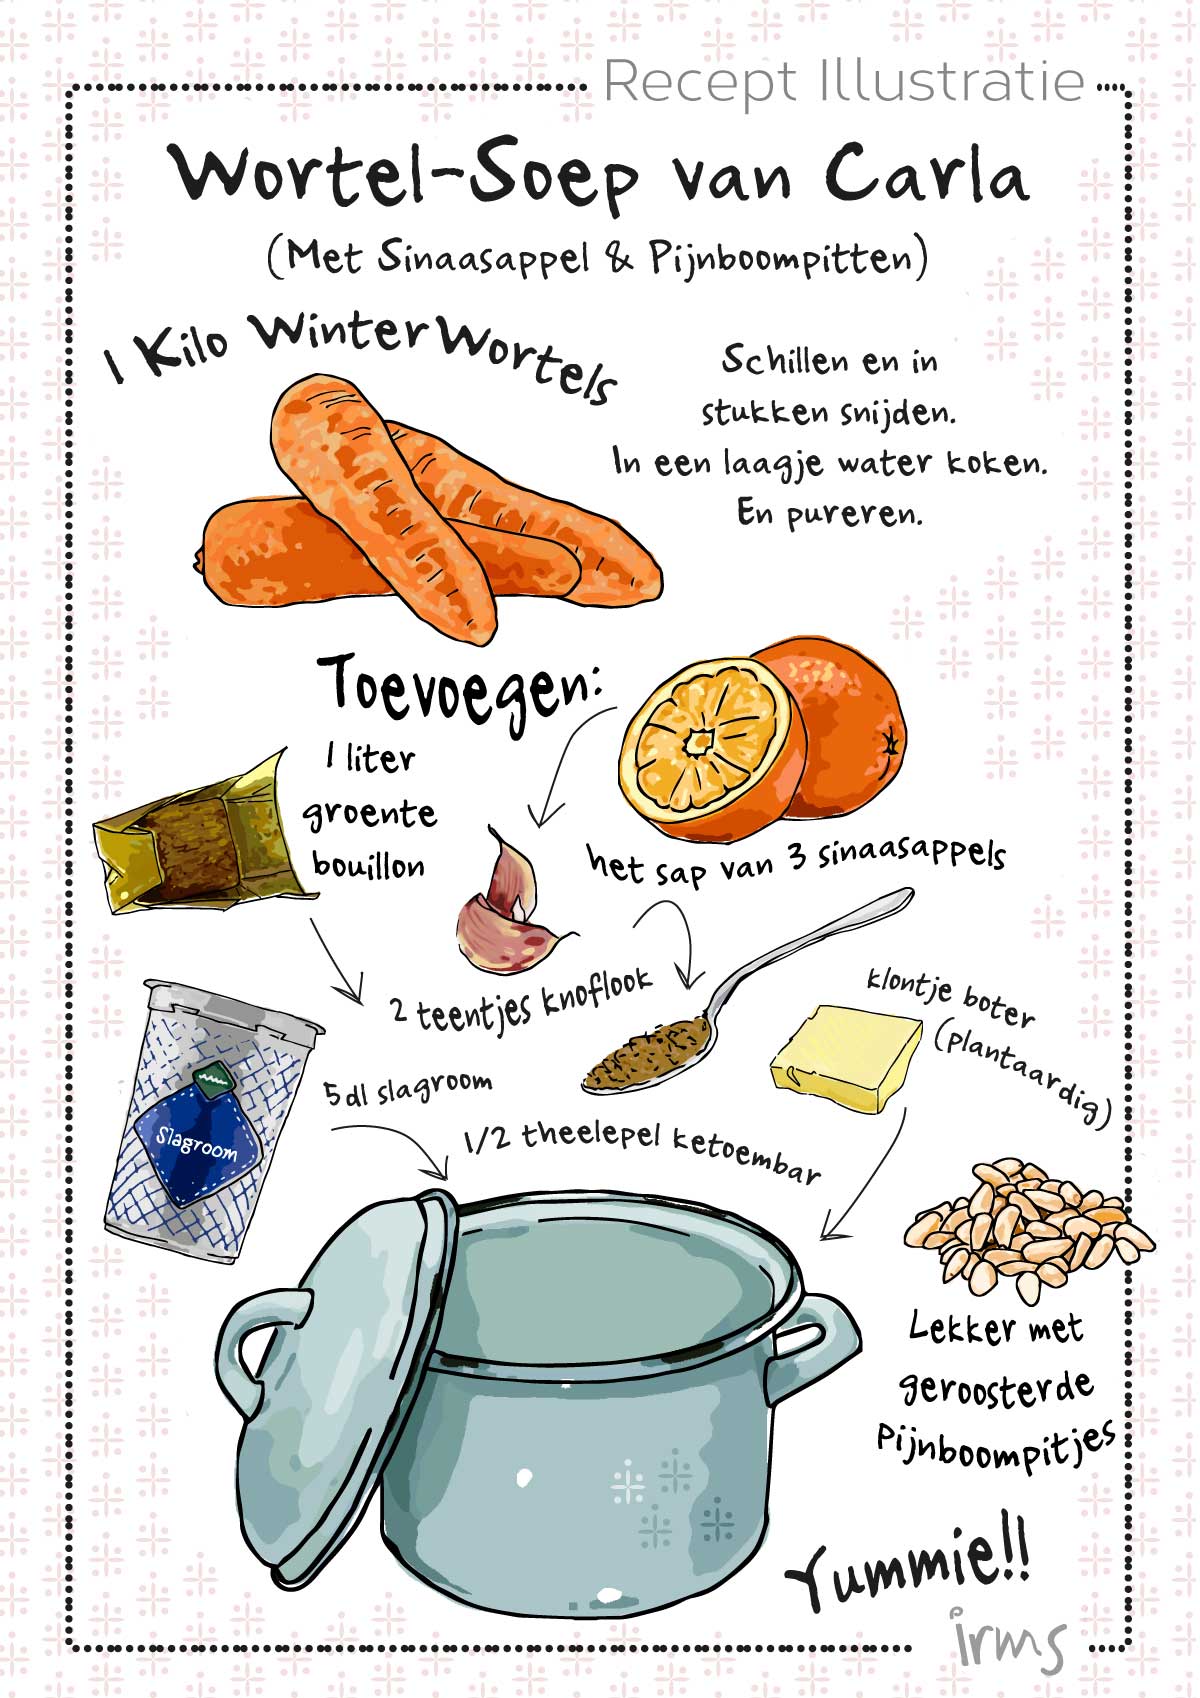 wortel-soep-recept-illustratie-irms